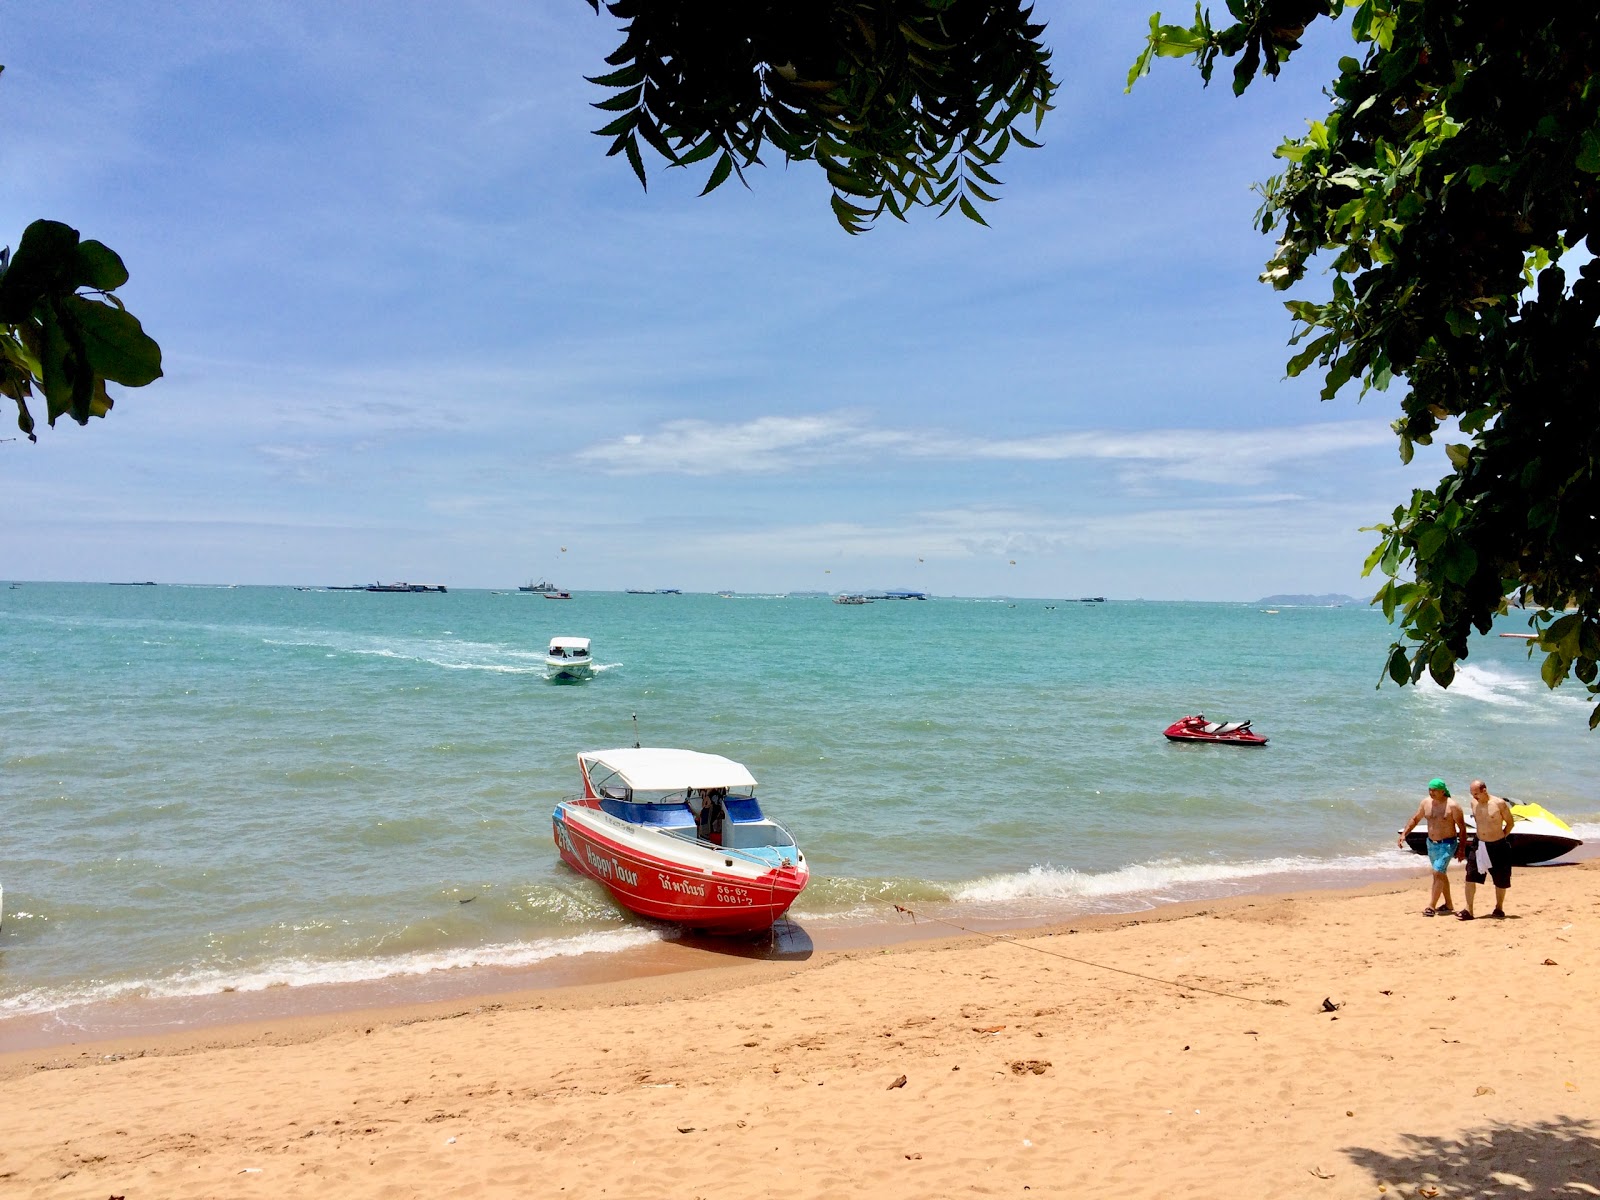 North Pattaya Beach'in fotoğrafı - rahatlamayı sevenler arasında popüler bir yer